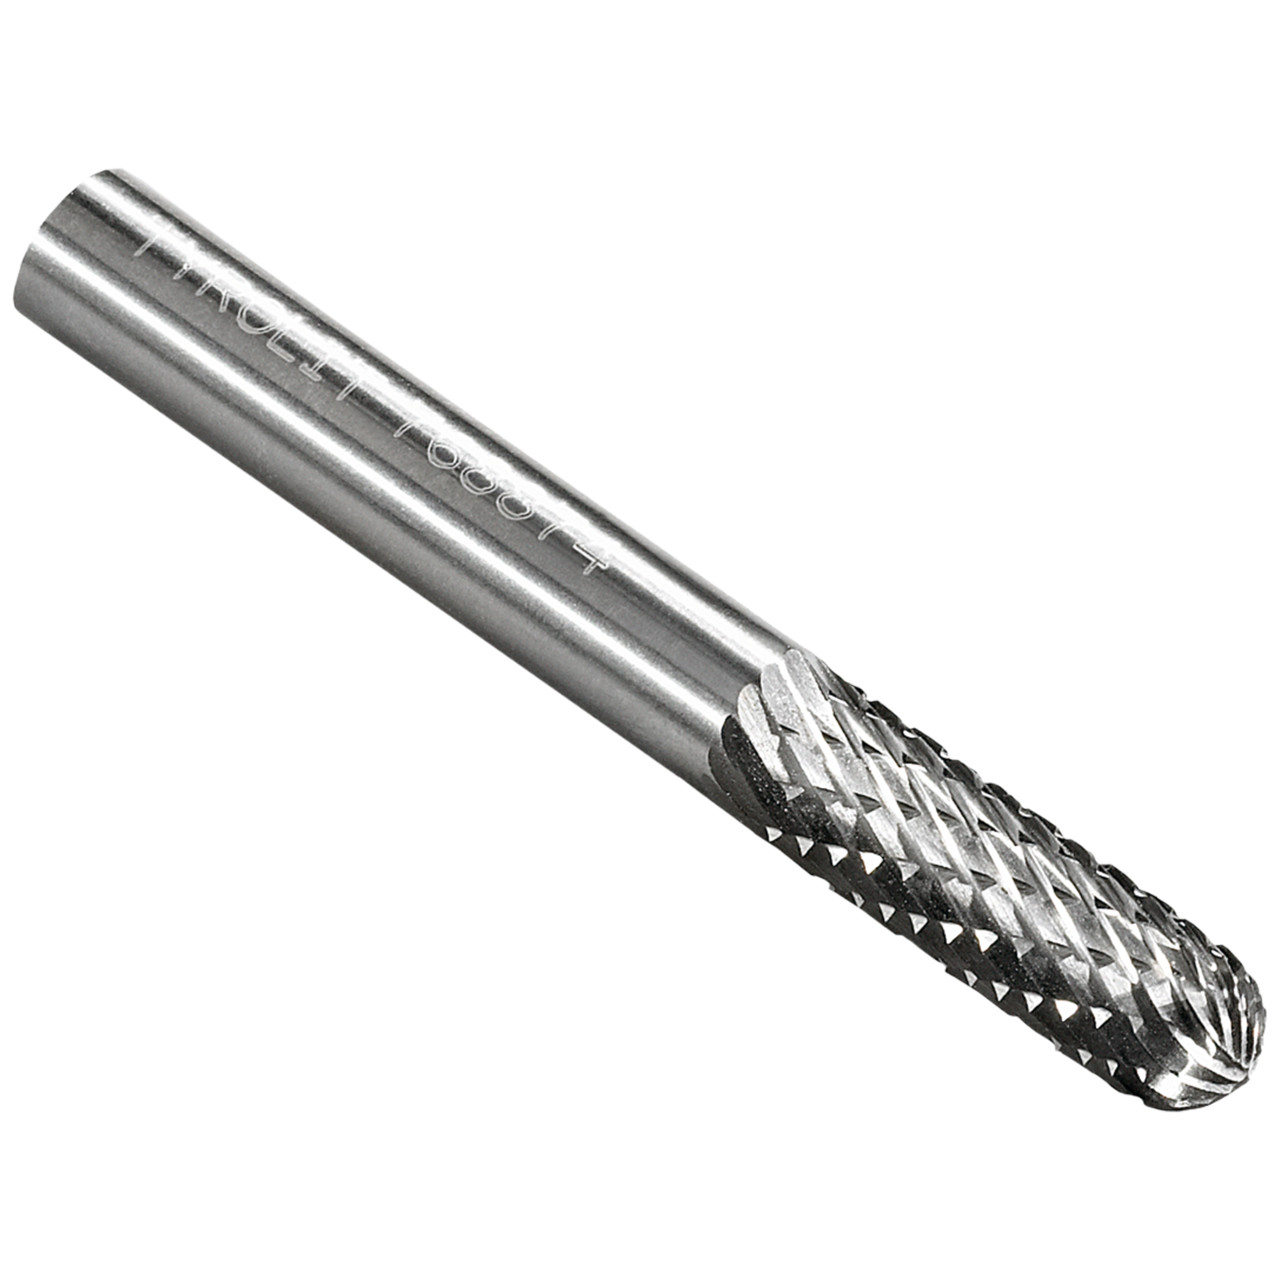 TYROLIT hardmetalen frees DxT-SxL 3x13-3x38 Voor gietijzer, staal en roestvrij staal, vorm: 52WRC - cilindrisch, Art. 766126